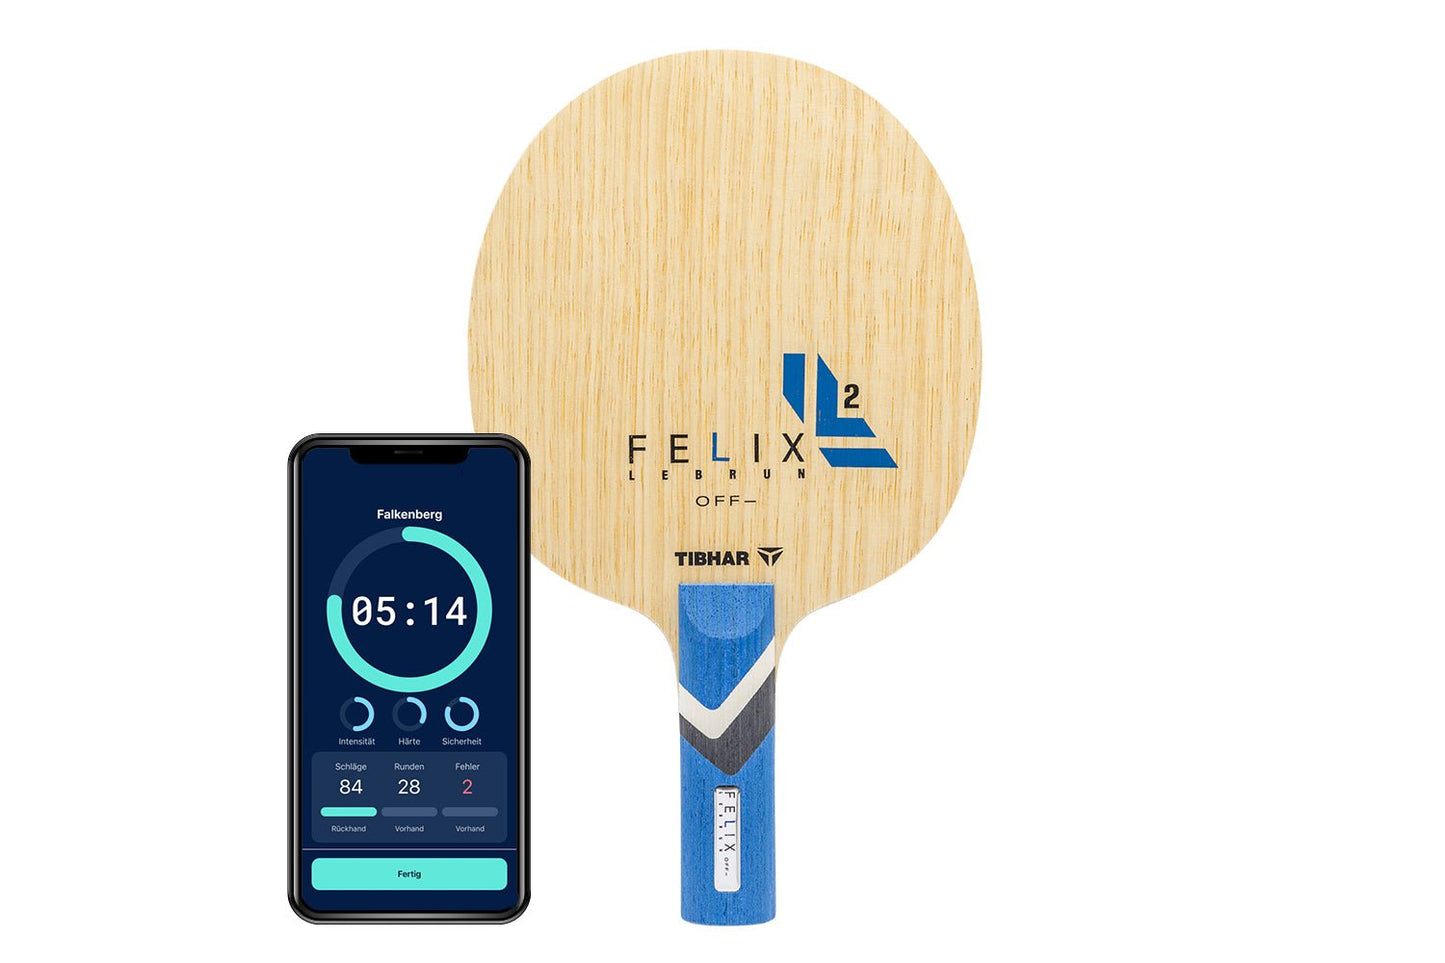 Tibhar Félix Lebrun Off- Tischtennisschläger mit geradem Griff und Smartphone zeigt Daten des Schlägers vor weißem Hintergrund